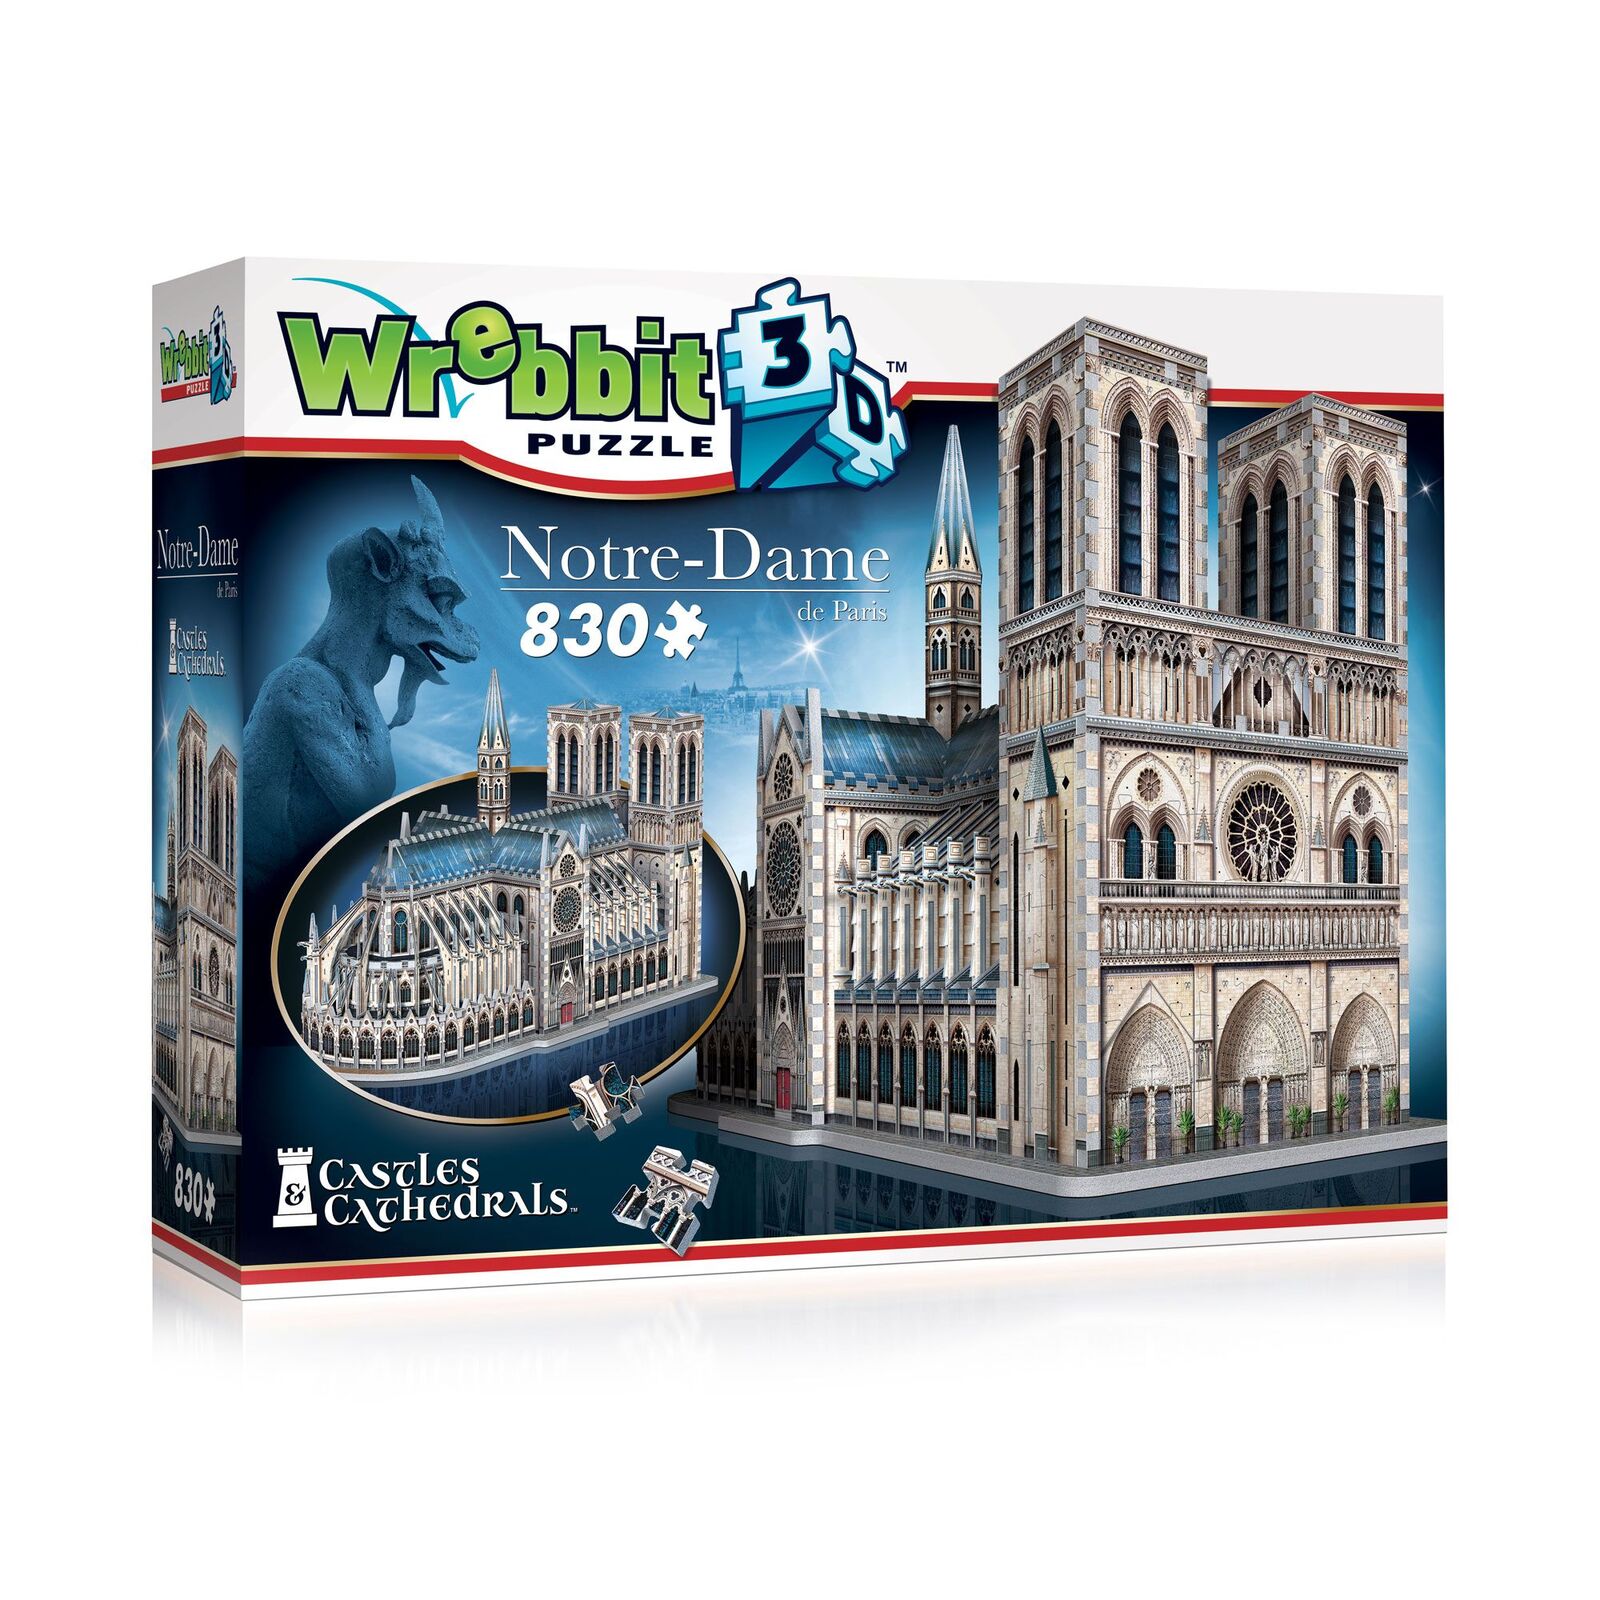 Notre-Dame Castle Wrebbit